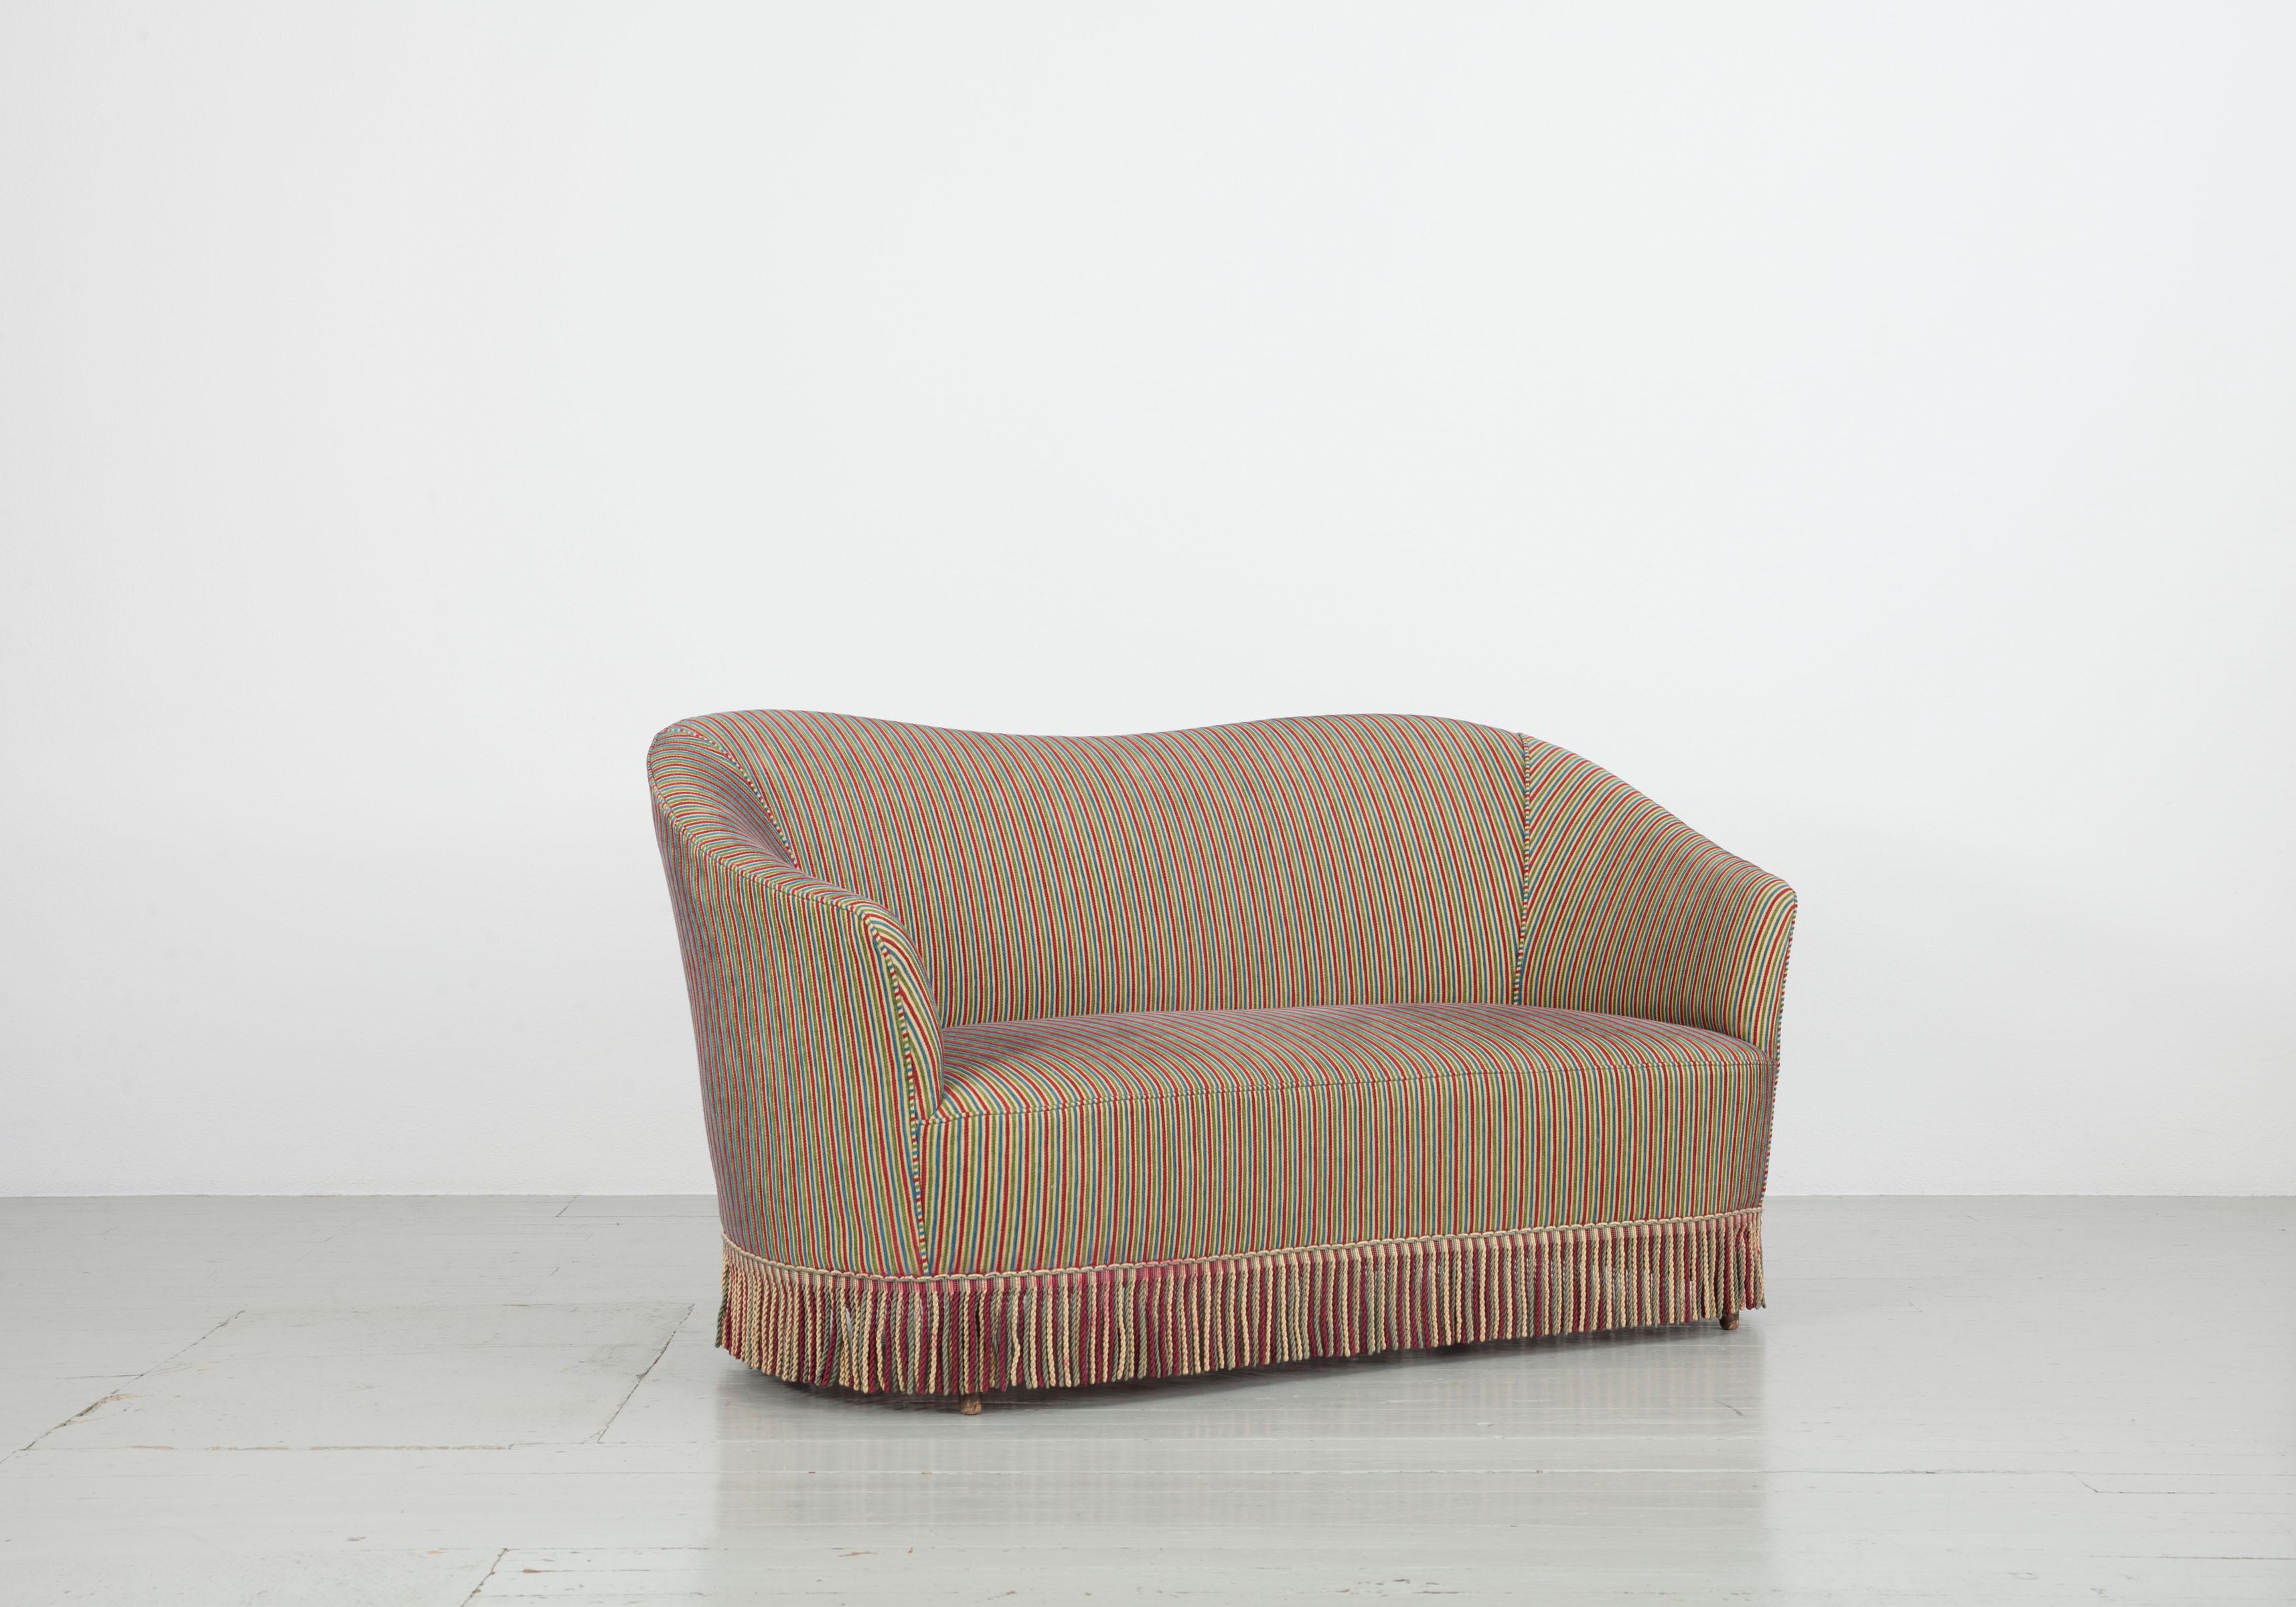 Cet ensemble de deux canapés a été conçu en Italie dans les années 1940 et 1950. Elle est recouverte d'un tissu de Fede Cheti. Les franges colorées cachent les pieds en bois et rendent le meuble individuel et extraordinaire. Les deux canapés sont en